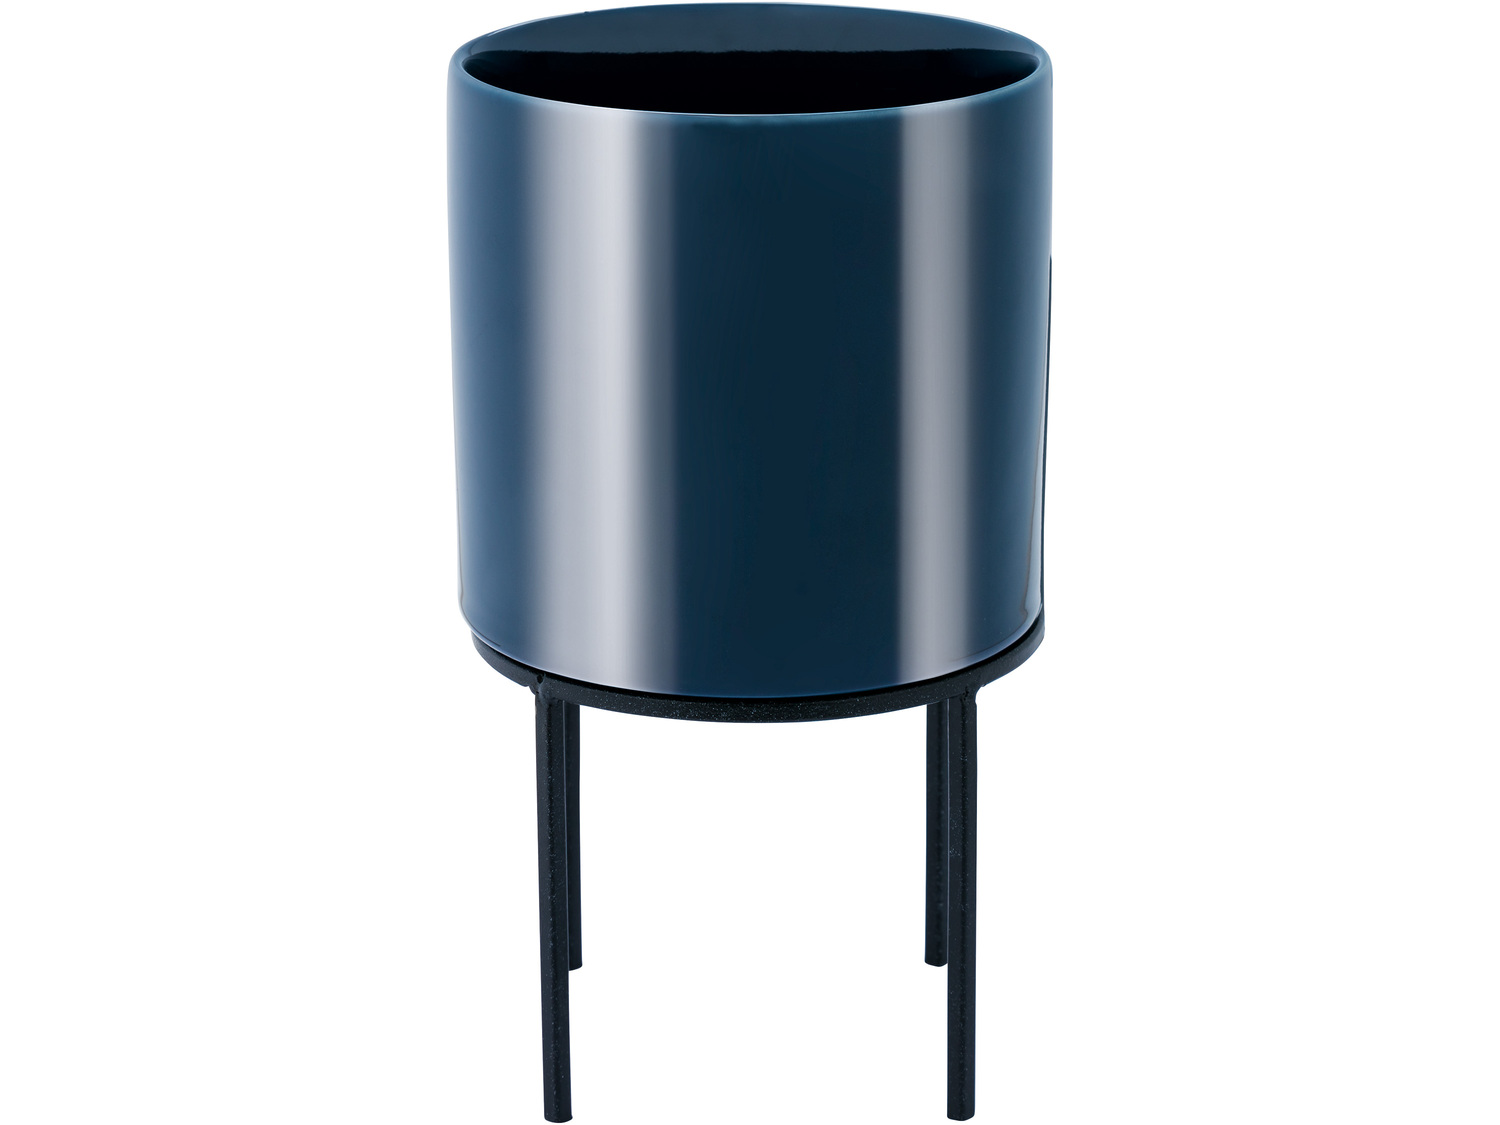 Doniczka ceramiczna z metalowym stojakiem Melinera, cena 3,99 PLN 
różne zestawy ...